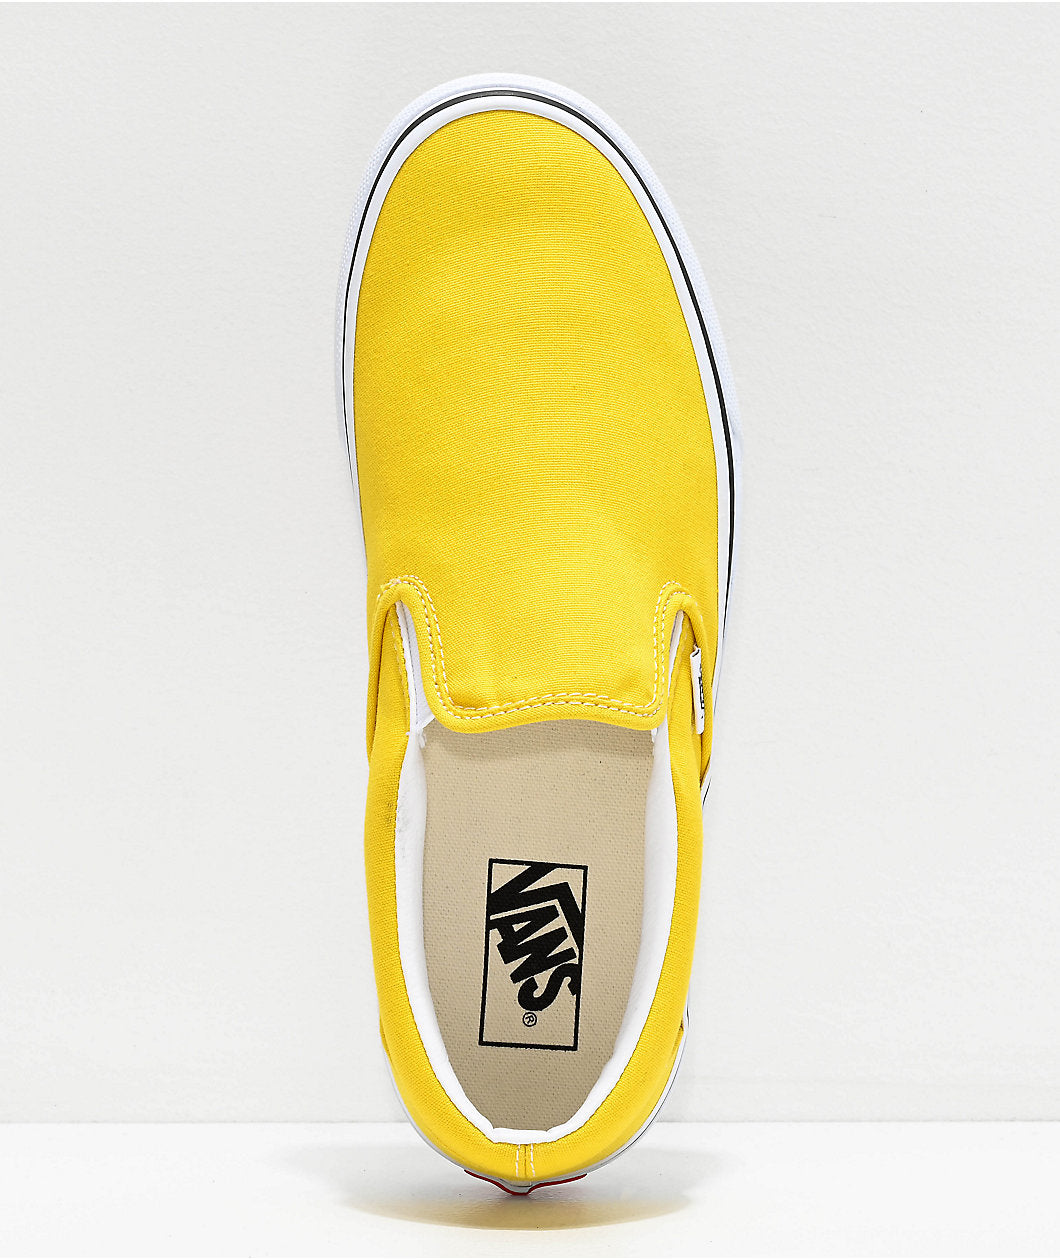 Vans Slip-On Vibrant Yellow & White Skate Shoes